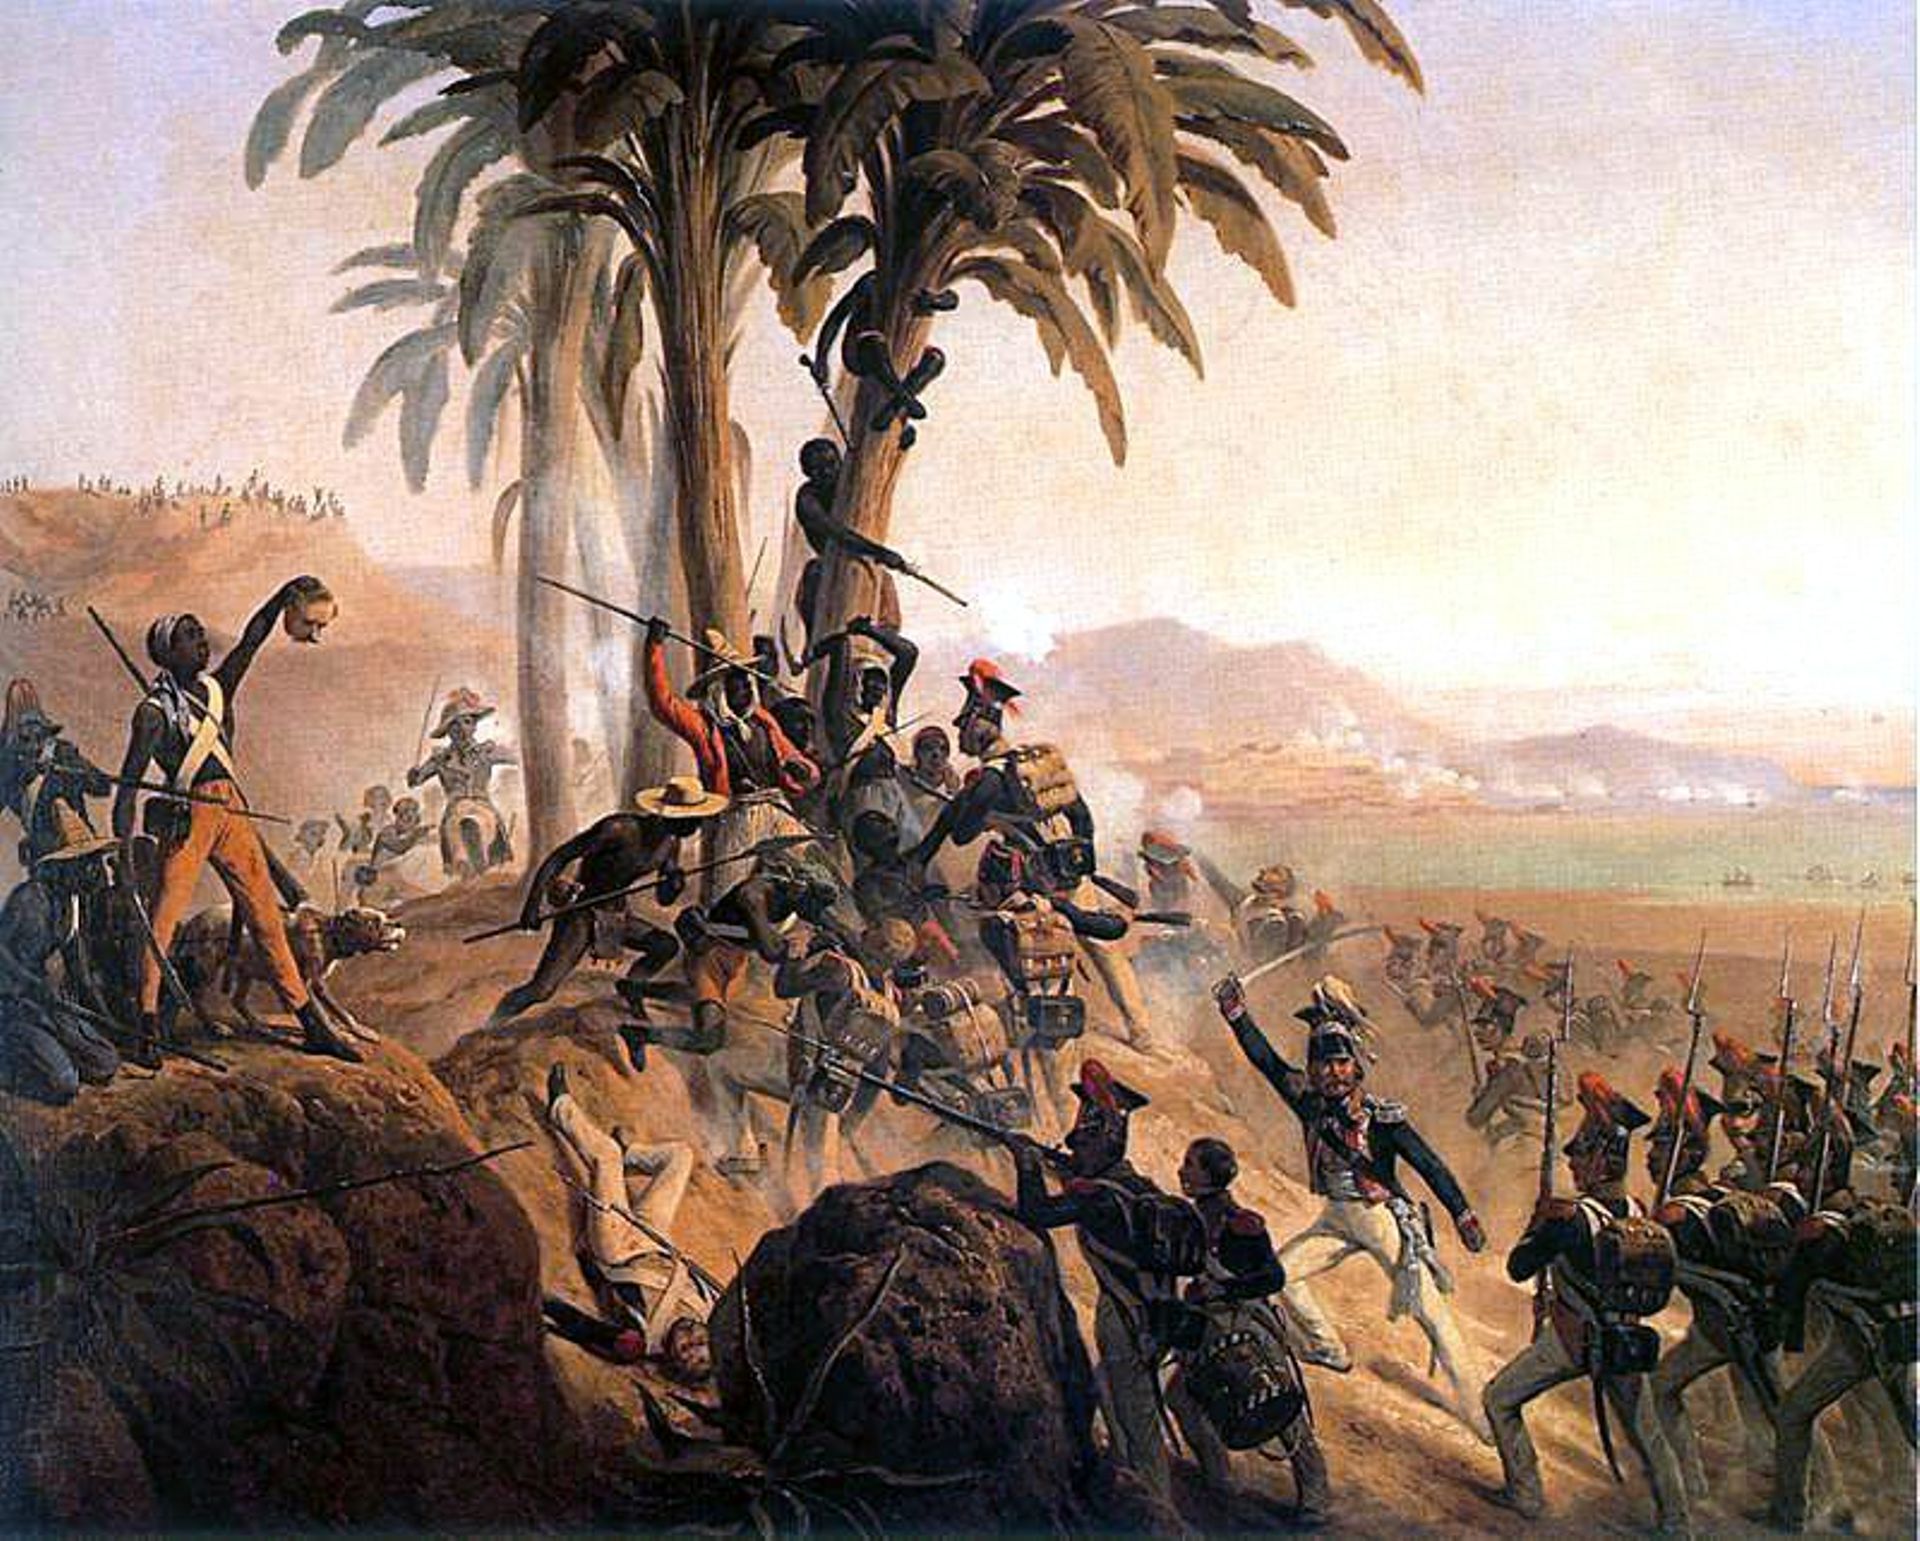 Battle for Palm Tree Hill, symbole de l’indépendance d’Haïti, par le peintre polonais Janvier Suchodolski en 1845.